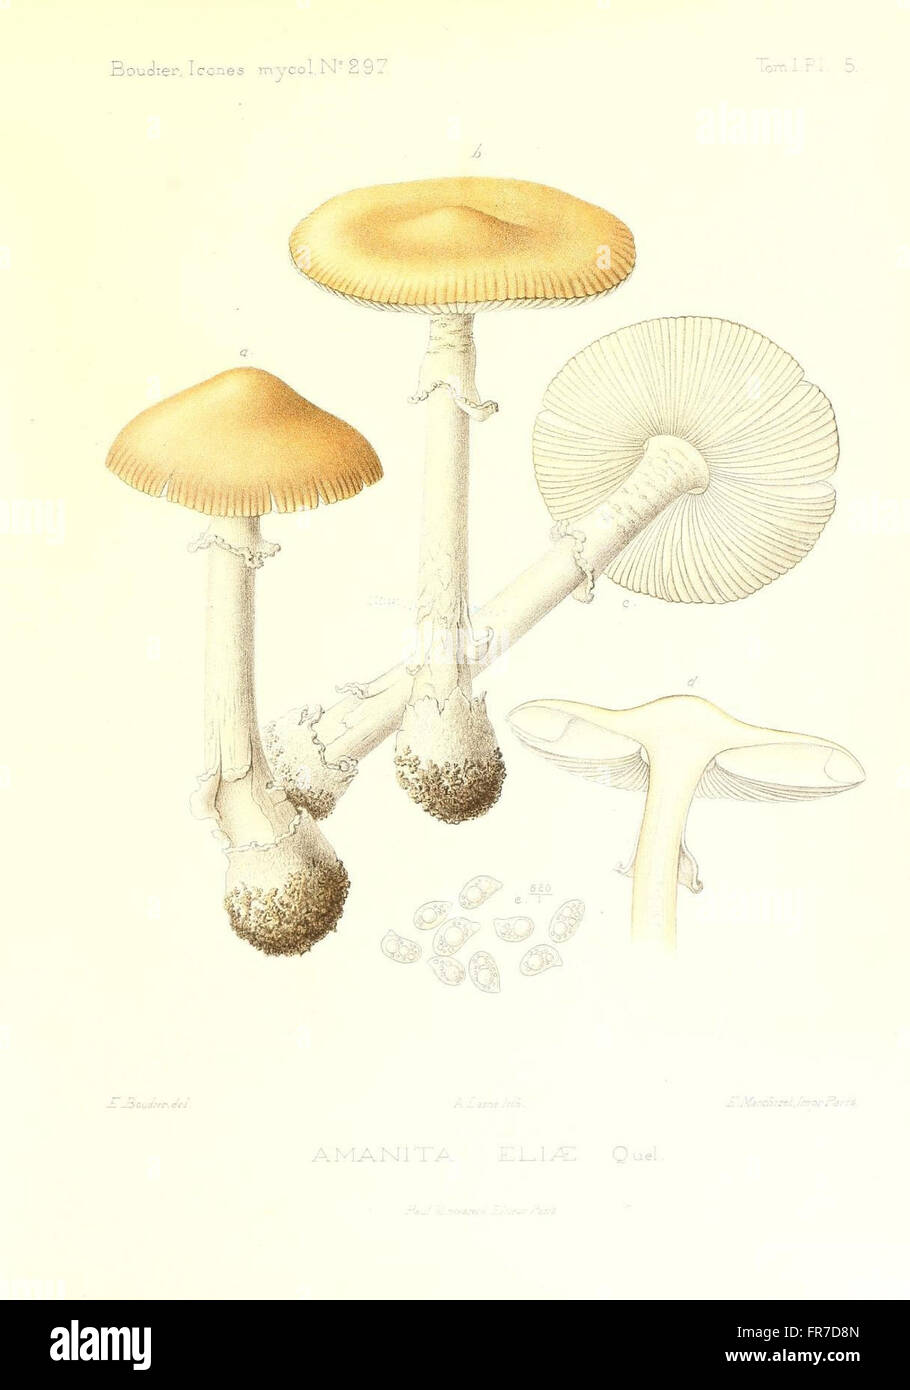 Icones mycologicC3A6, ou Iconographie des champignons de France principalement Discomycetes (Pl. 5) Stock Photo